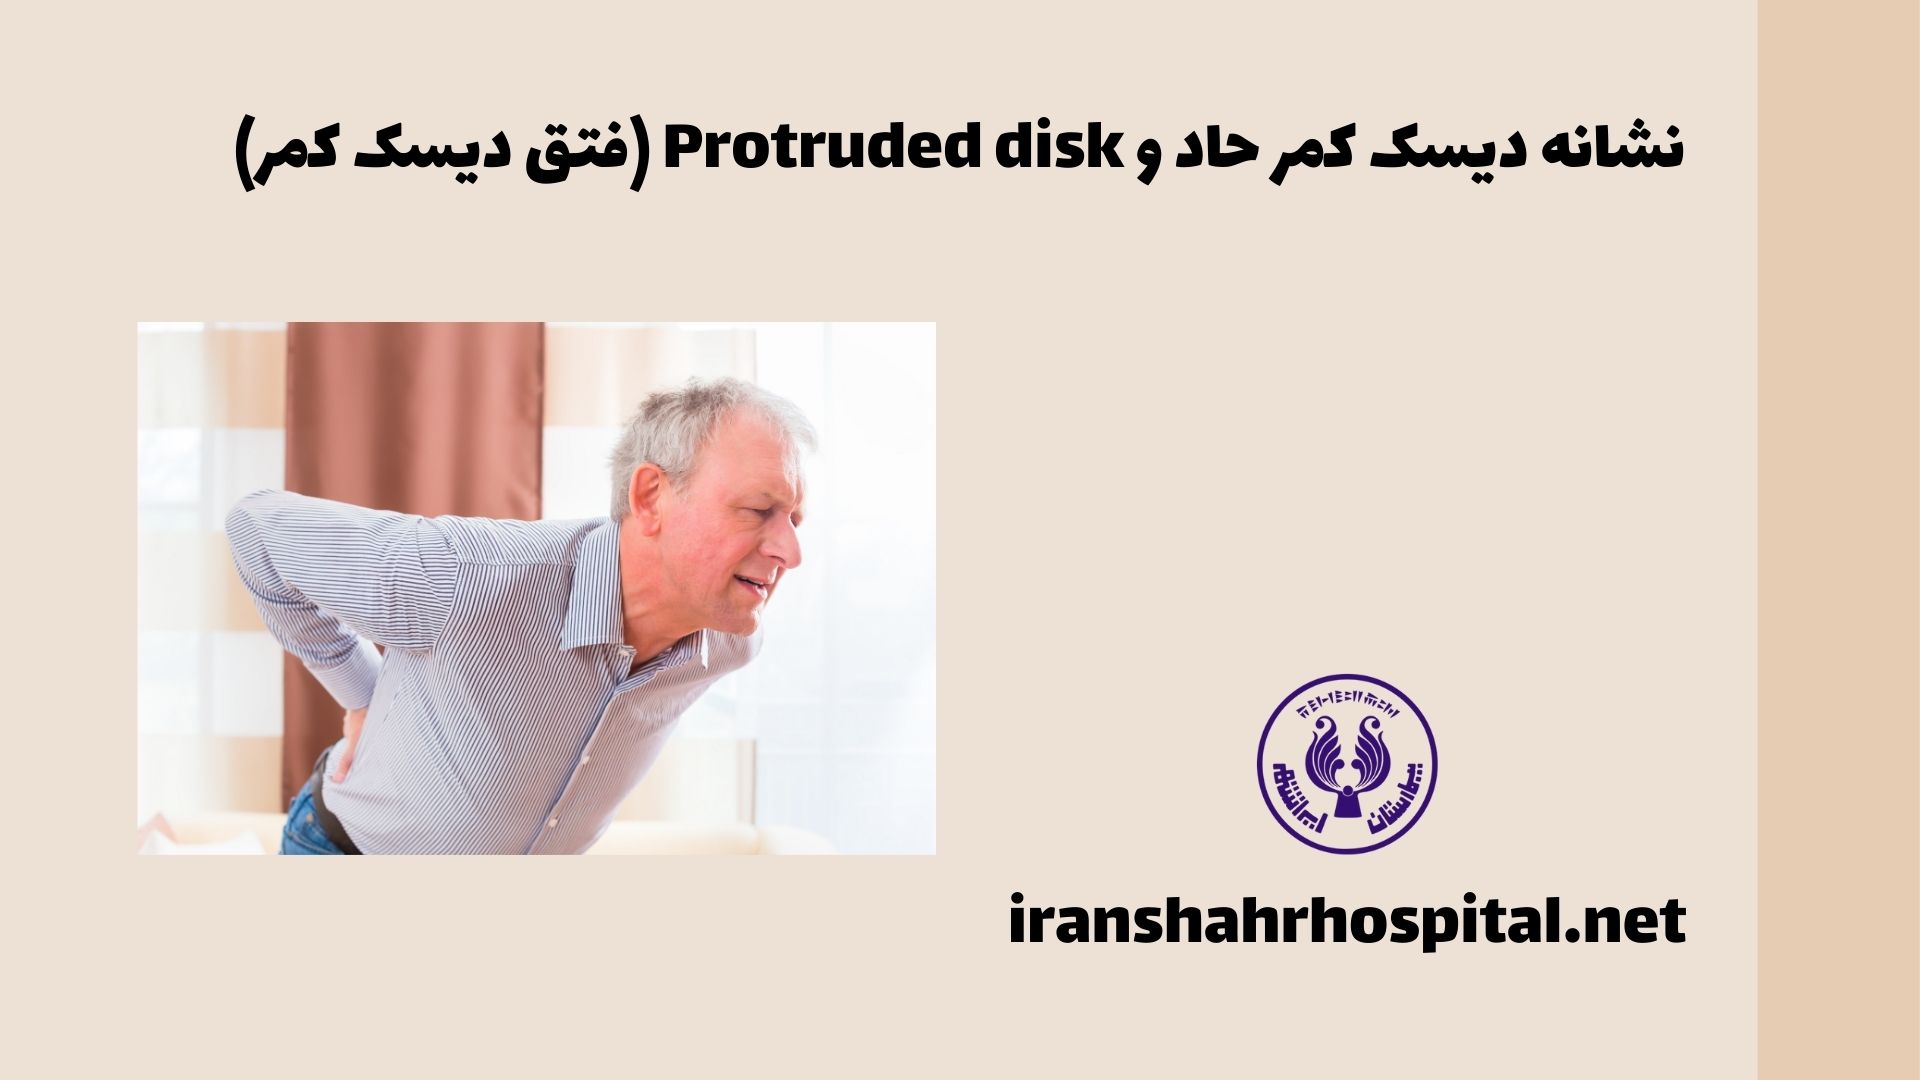 نشانه دیسک کمر حاد و Protruded disk (فتق دیسک کمر)